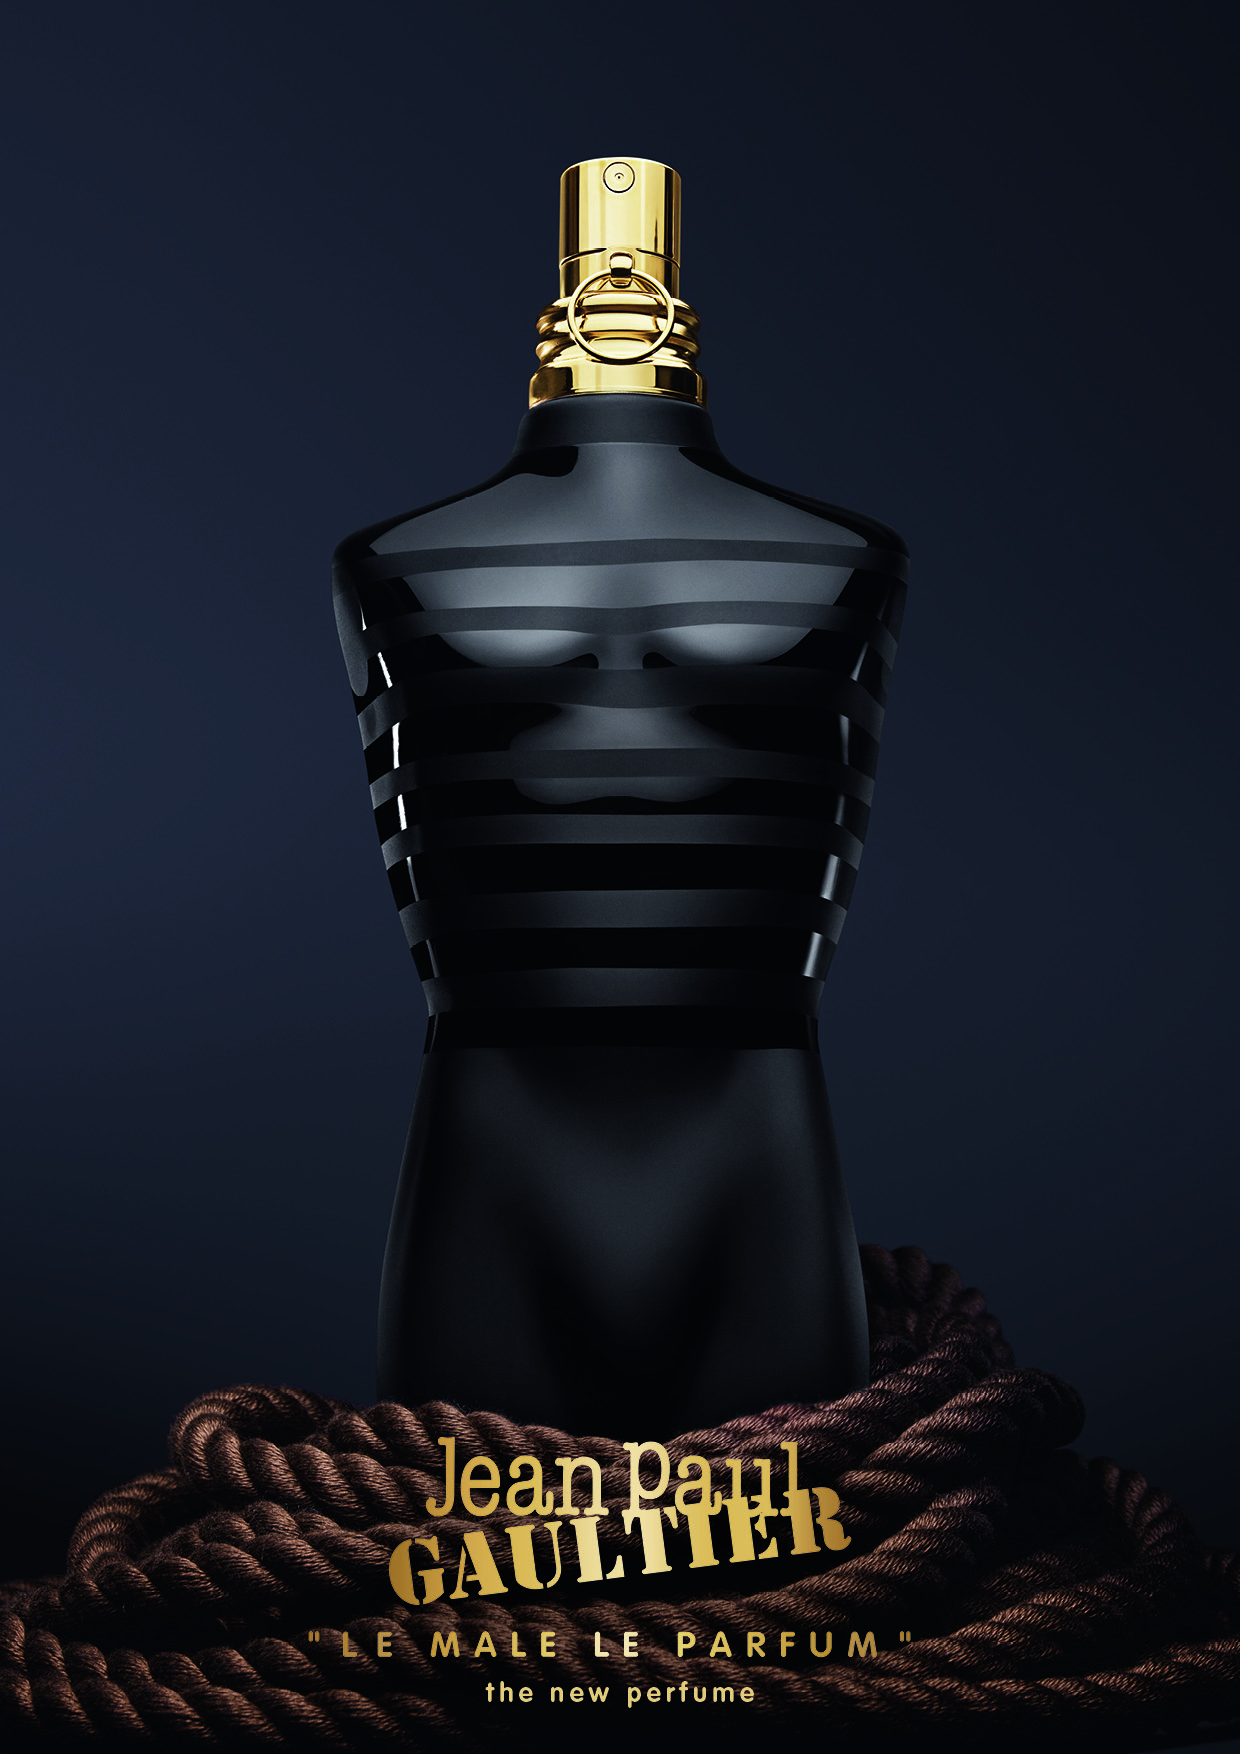 Jean Paul Gaultier Le Male Le Parfum ~ Novas fragrâncias